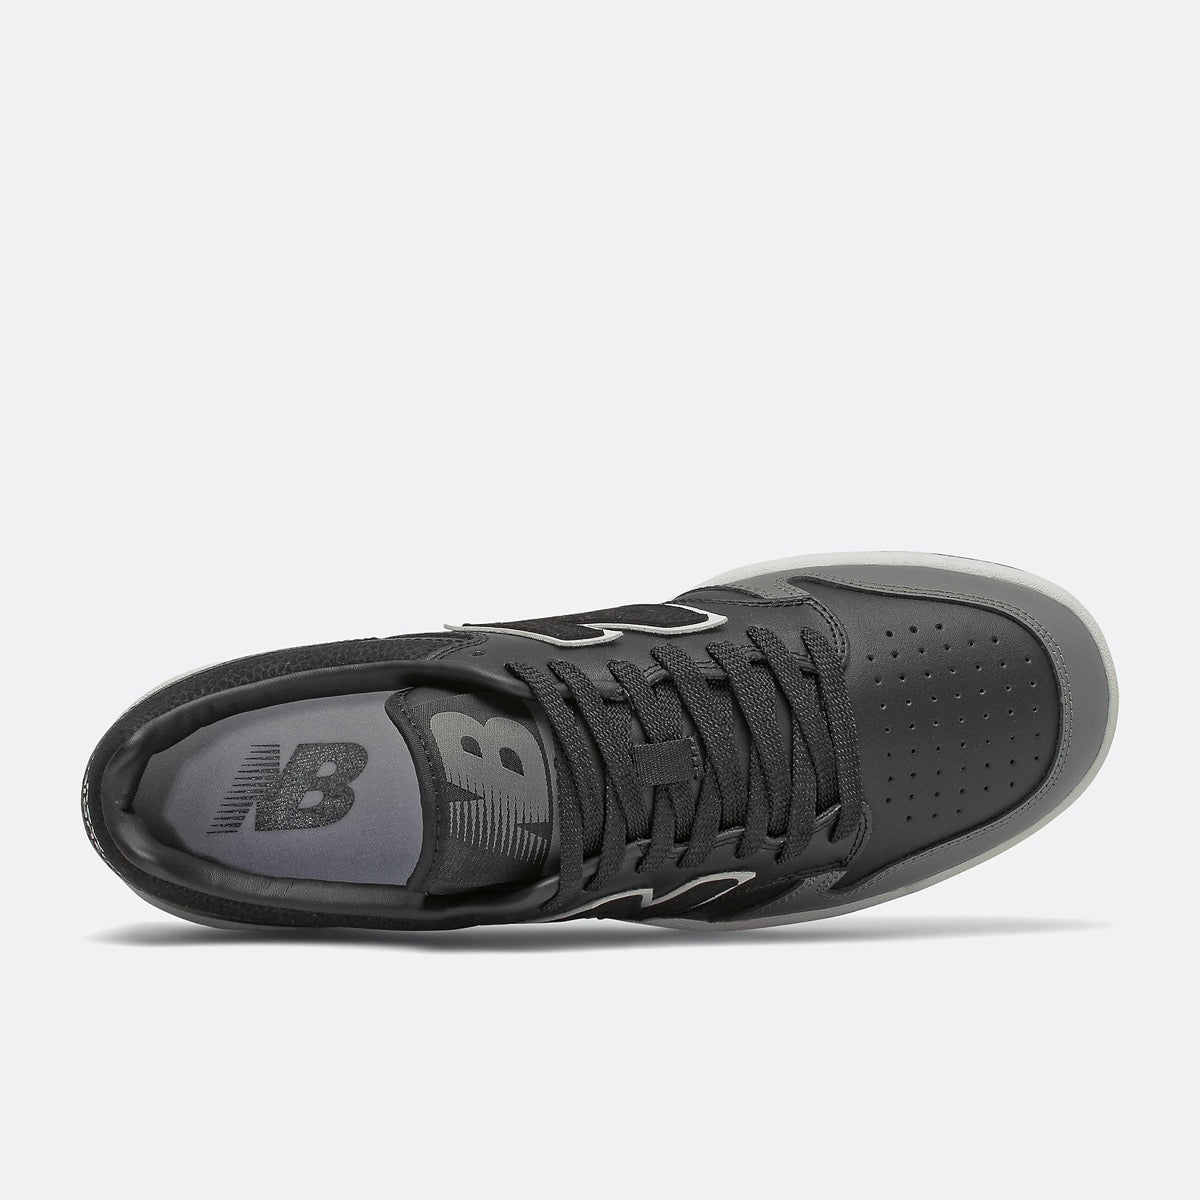 Scarpe Uomo NEW BALANCE Sneakers 480 in Pelle colore Black e Castelrock